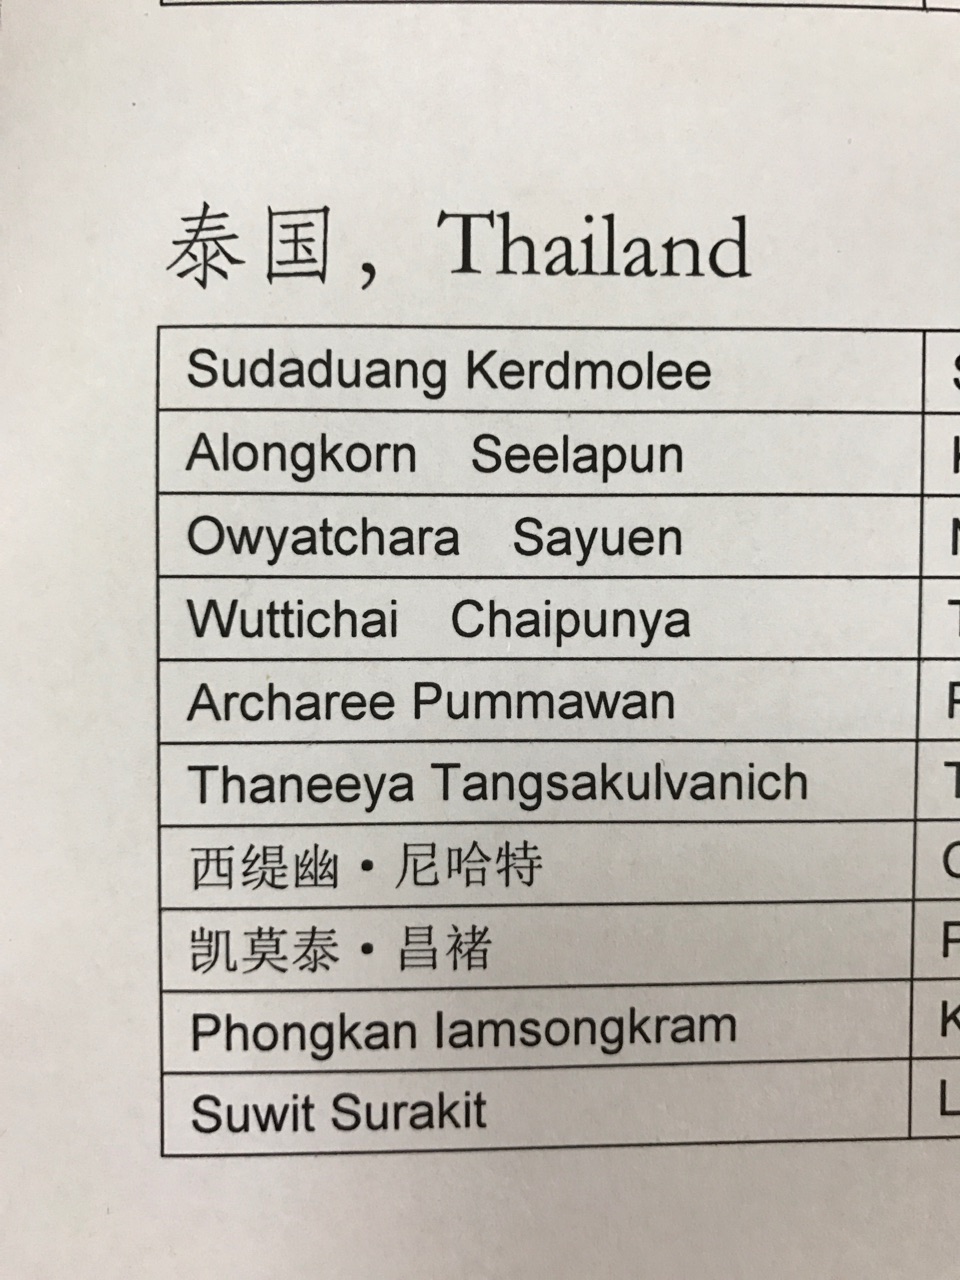 求助!怎么把泰国人名的英语翻译成中文!